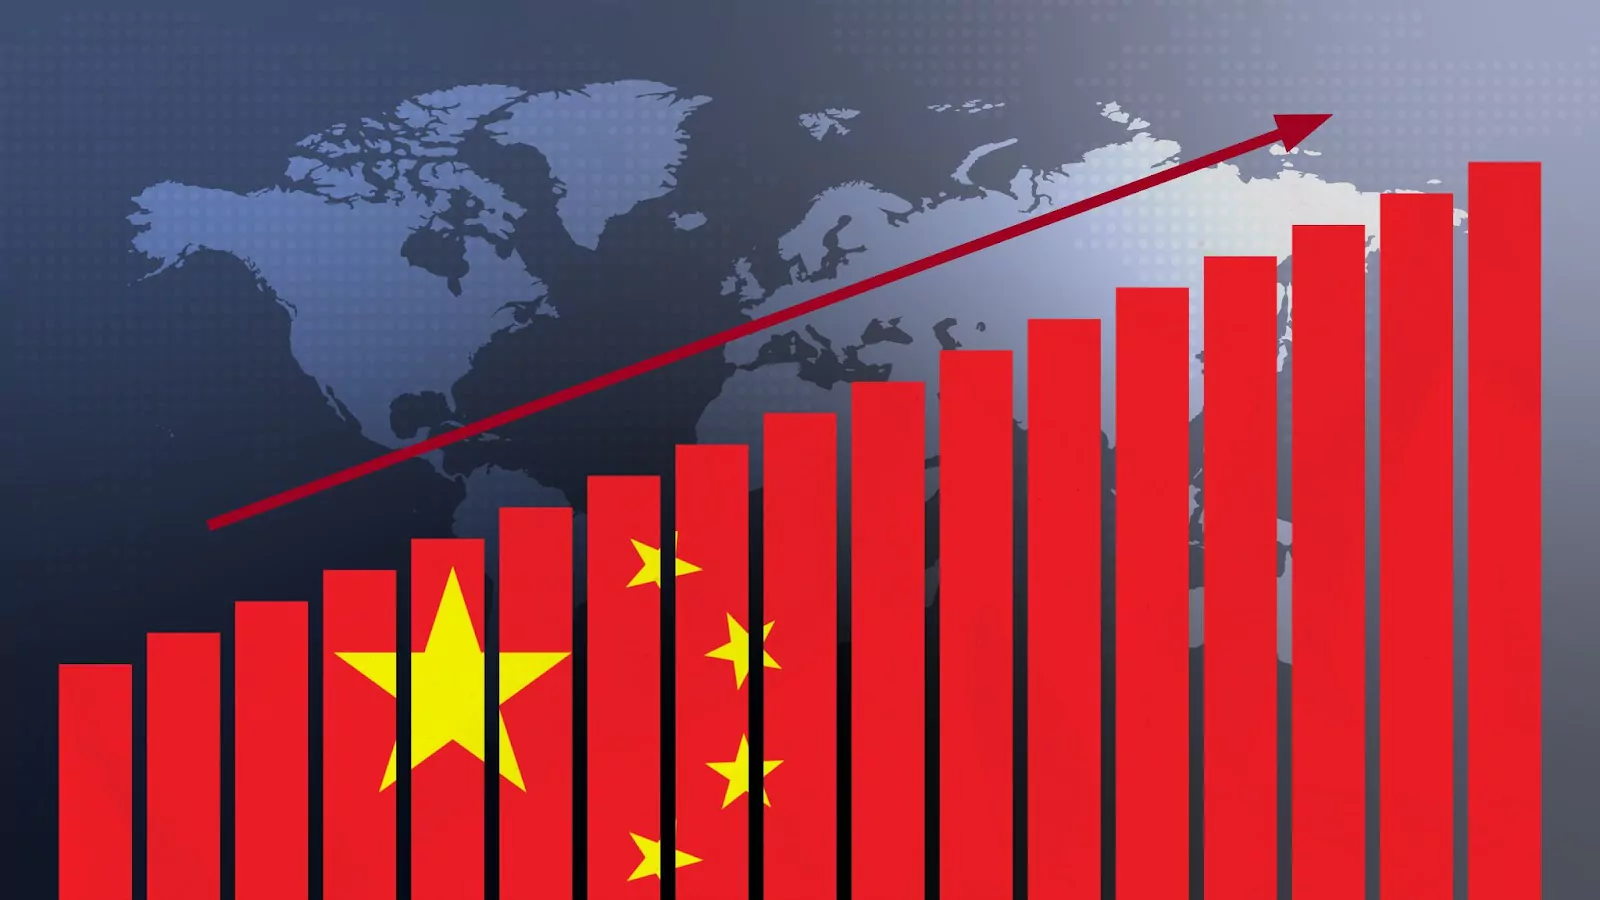 Икономиката на Китай се разраства с невероятни темпове според последни данни